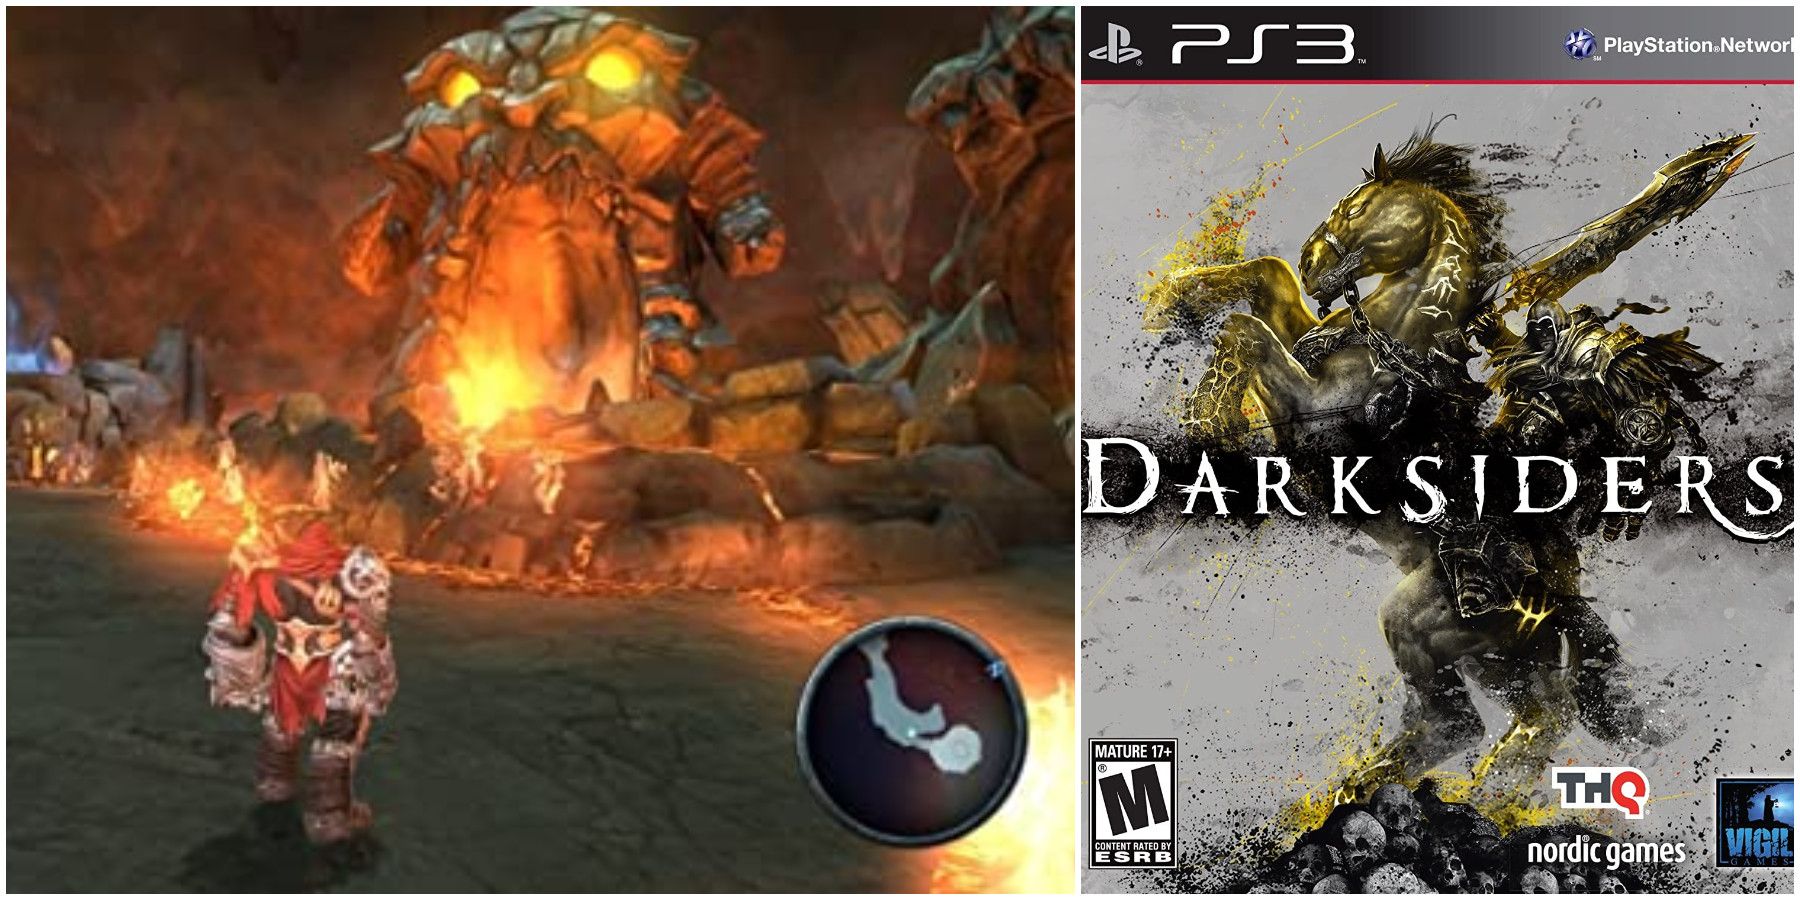 Darksiders PlayStation 3 RPG